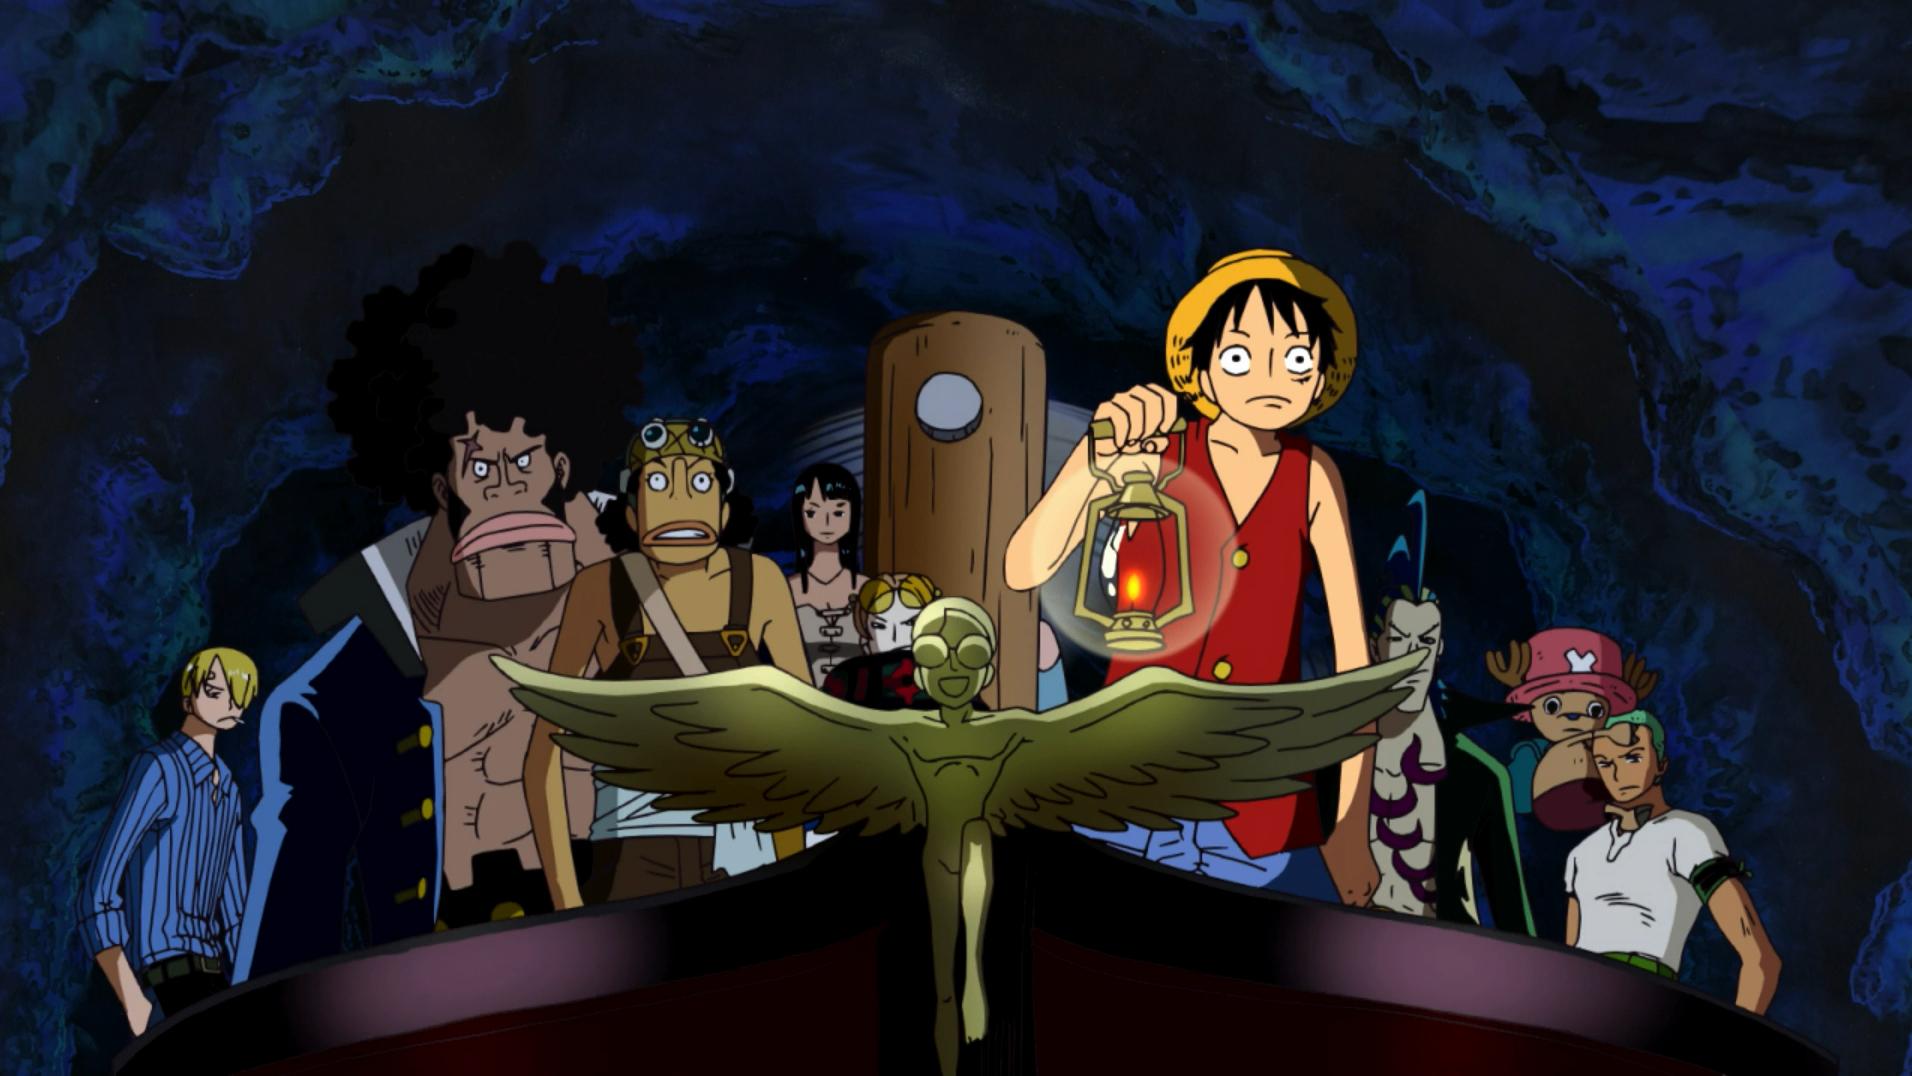 Đảo Hải Tặc 7: Tên Lính Máy Khổng Lồ Trong Lâu Đài Karakuri - One Piece Movie 7: Karakuri Castle'S Mecha Giant Soldier